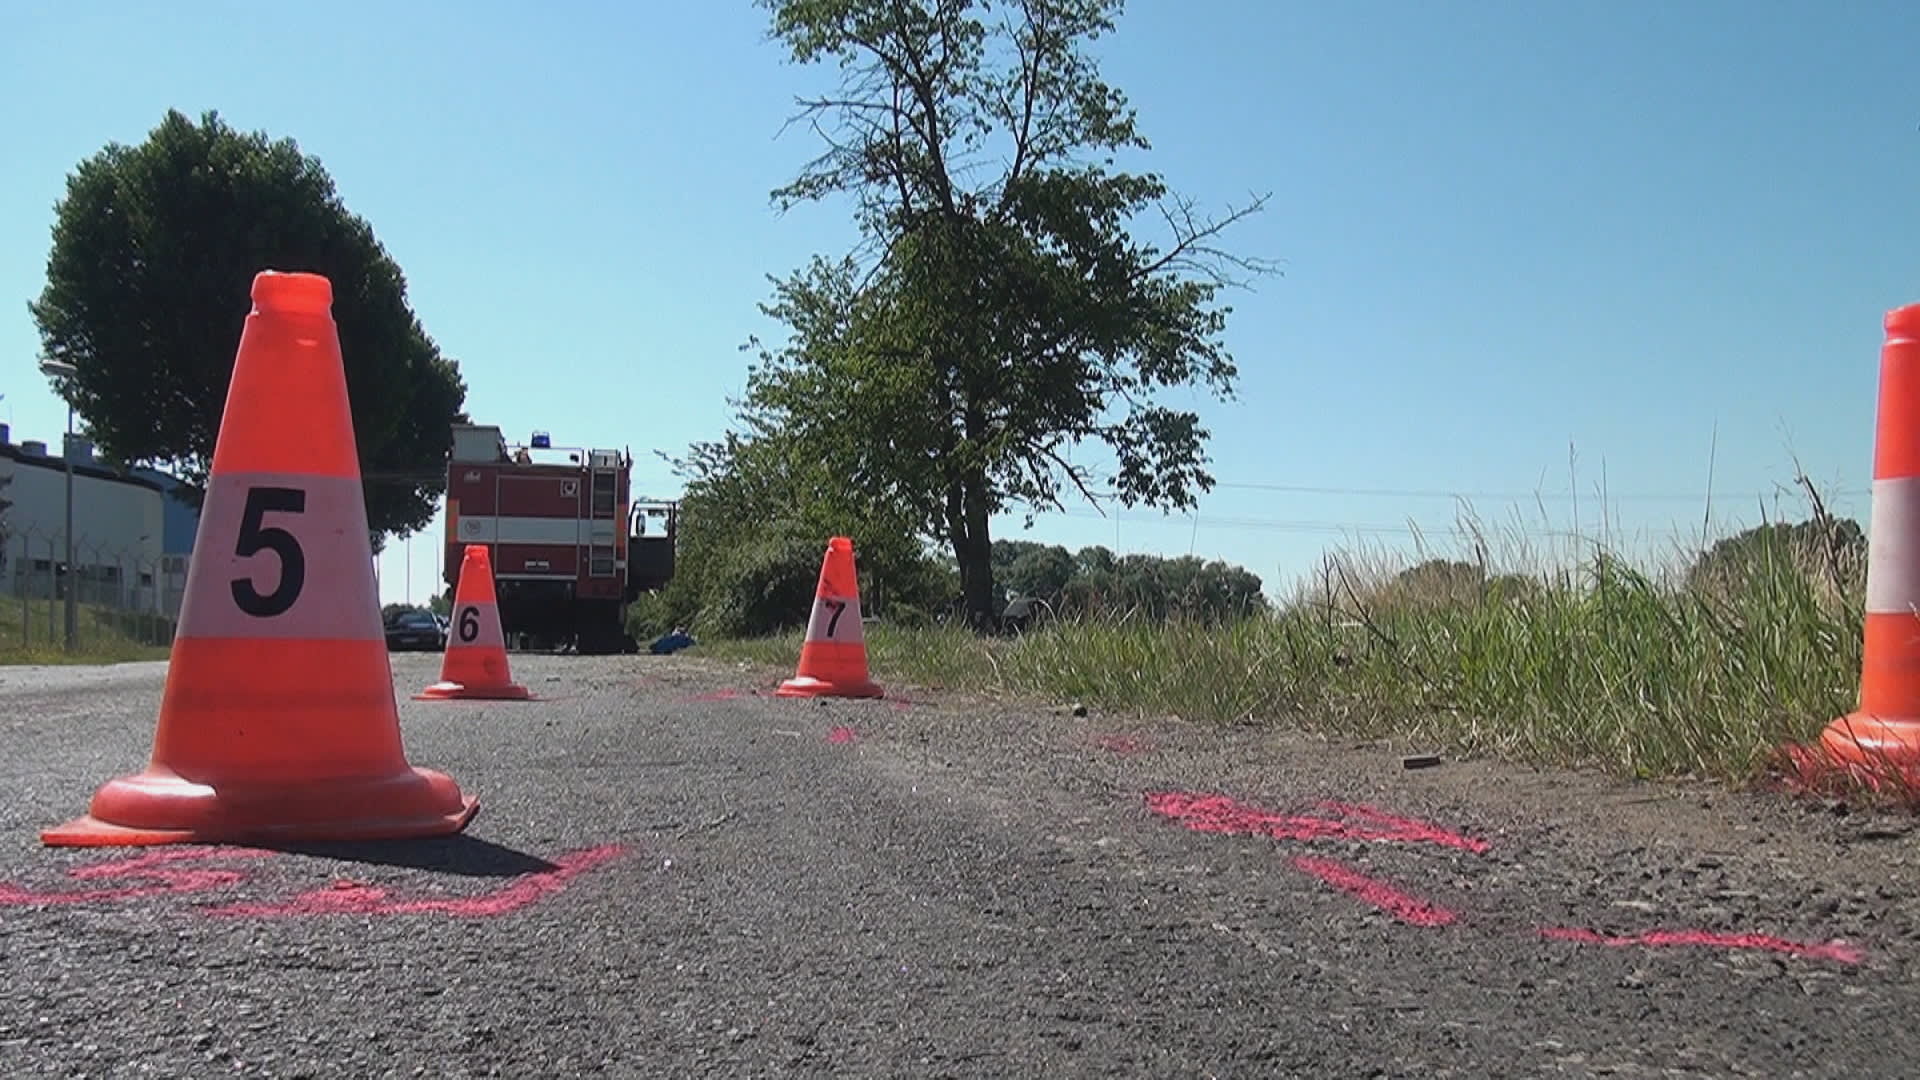 Tragická nehoda dvou aut automobilem uzavřela ve čtvrtek silnici z Jičína na Popovice